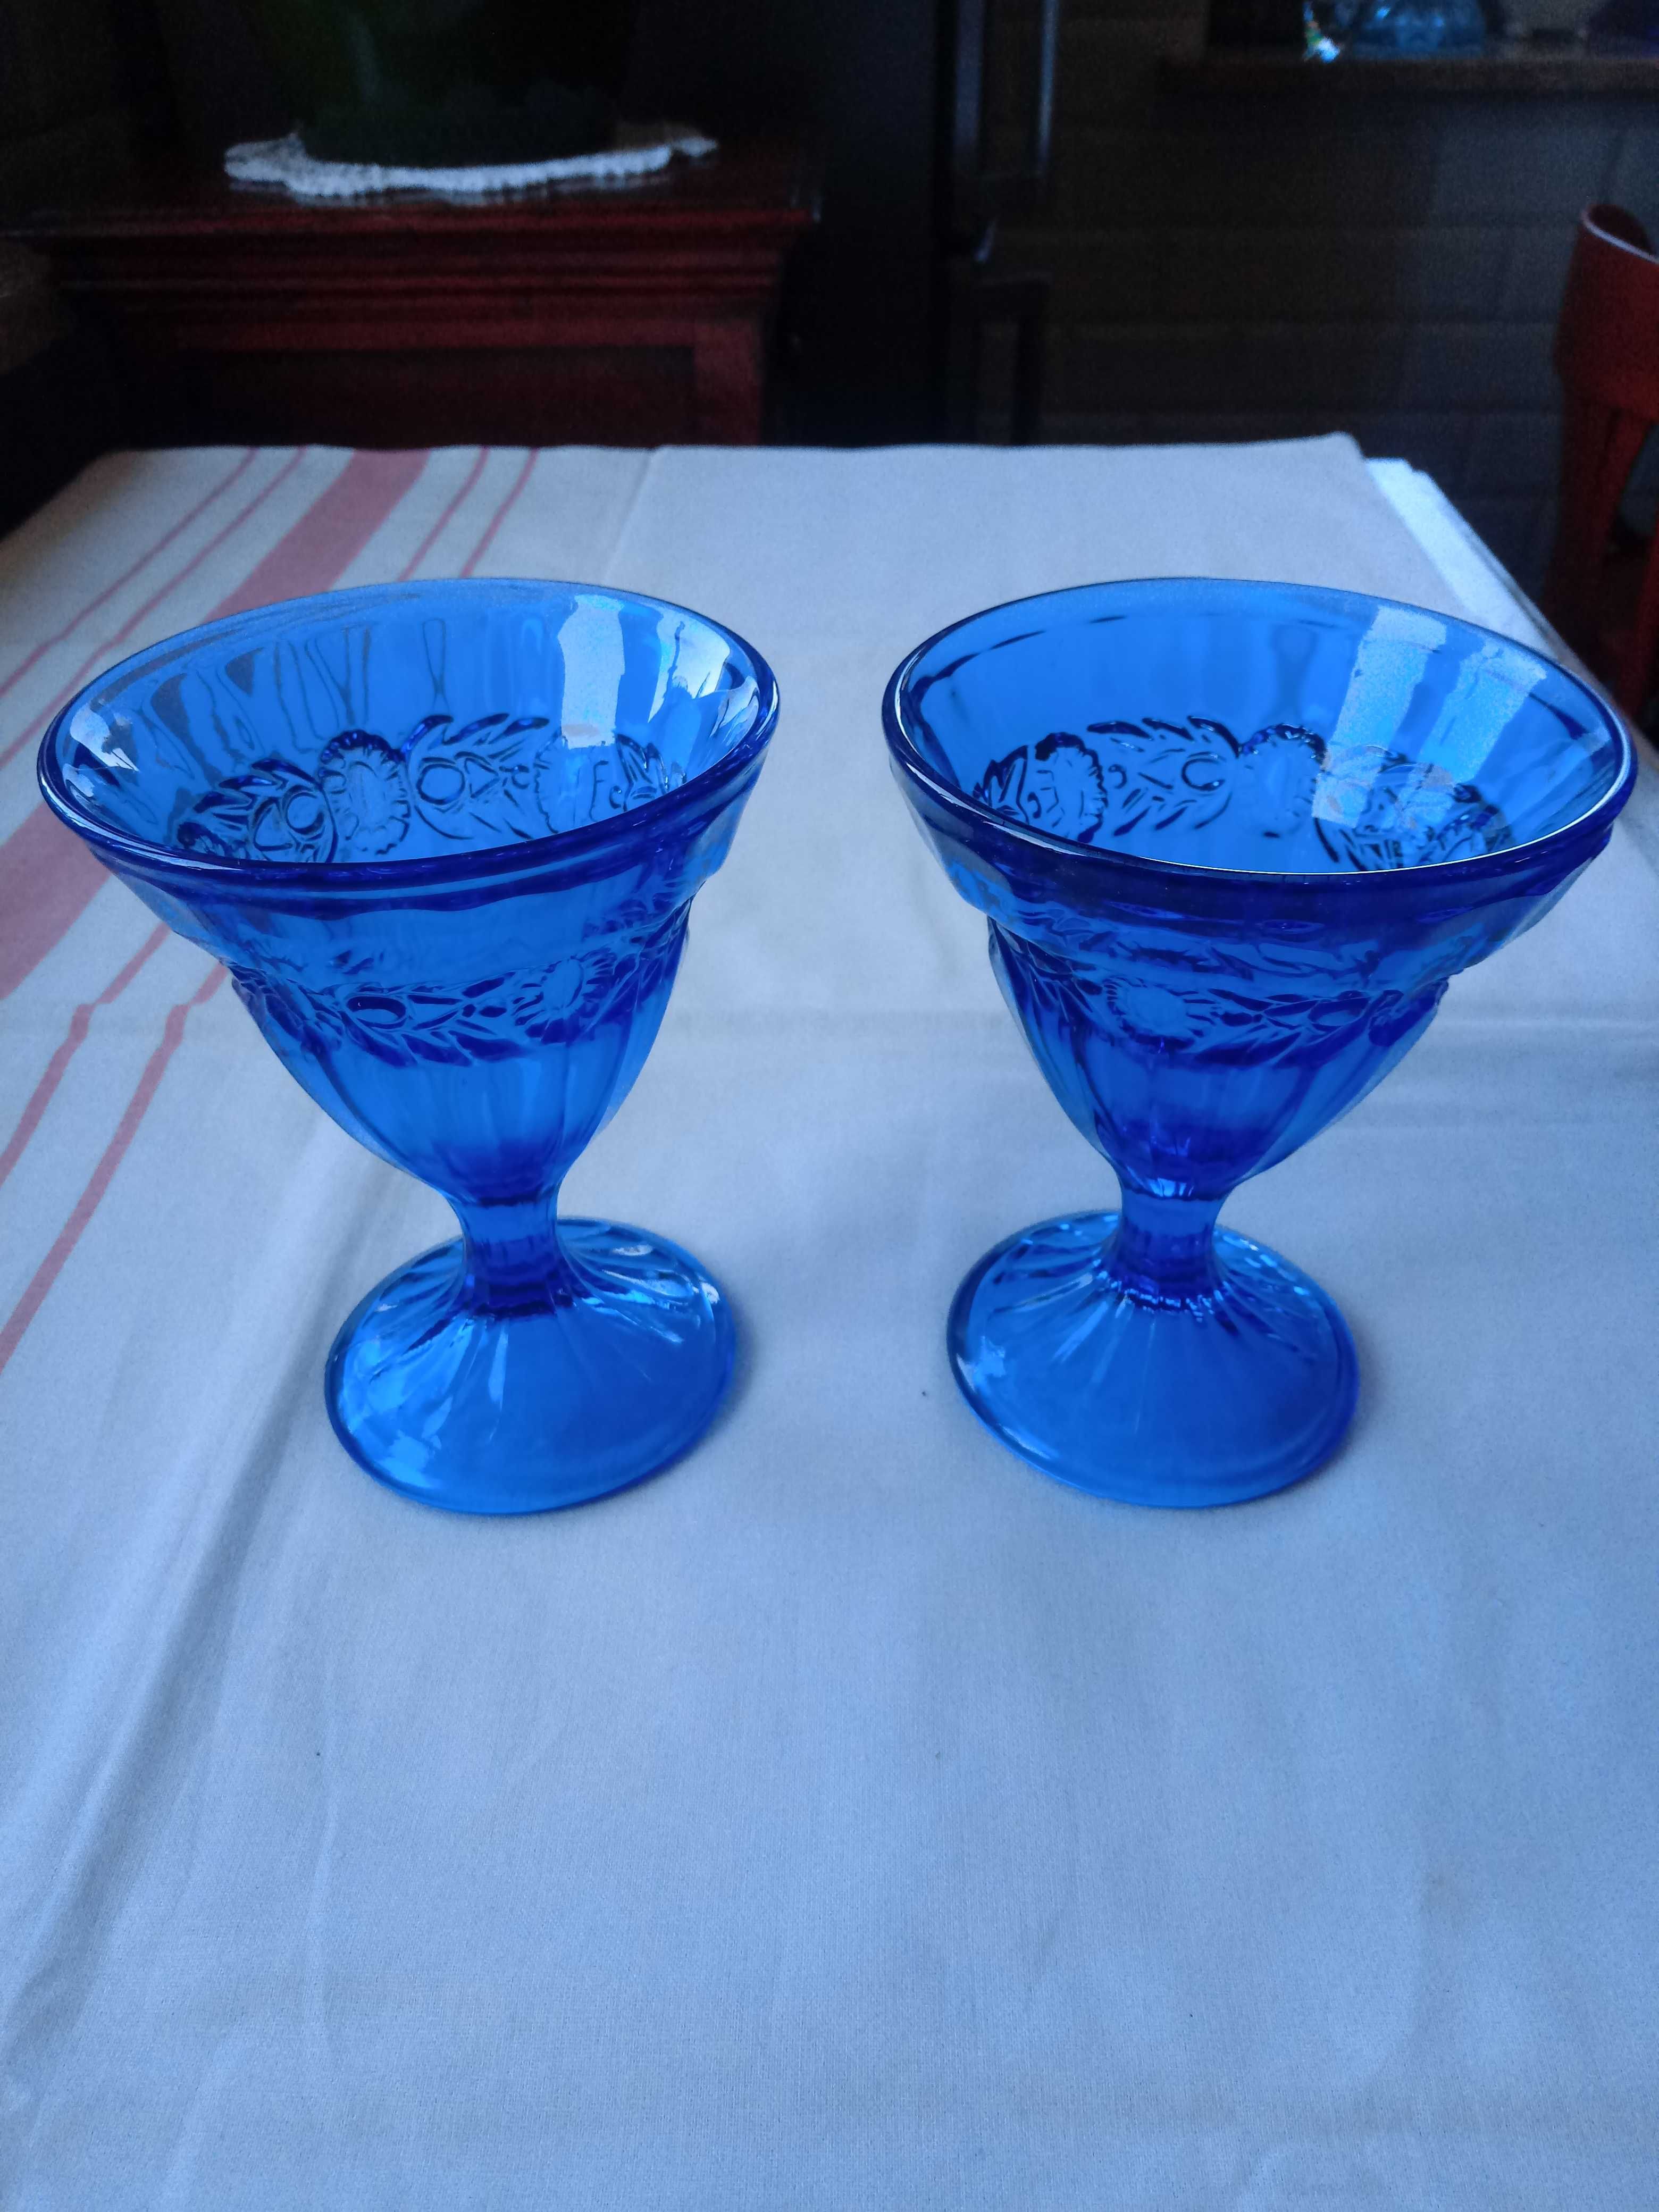 stary kobaltowy niebieski szklany pucharek cukiernica 2 sztuki lata 80